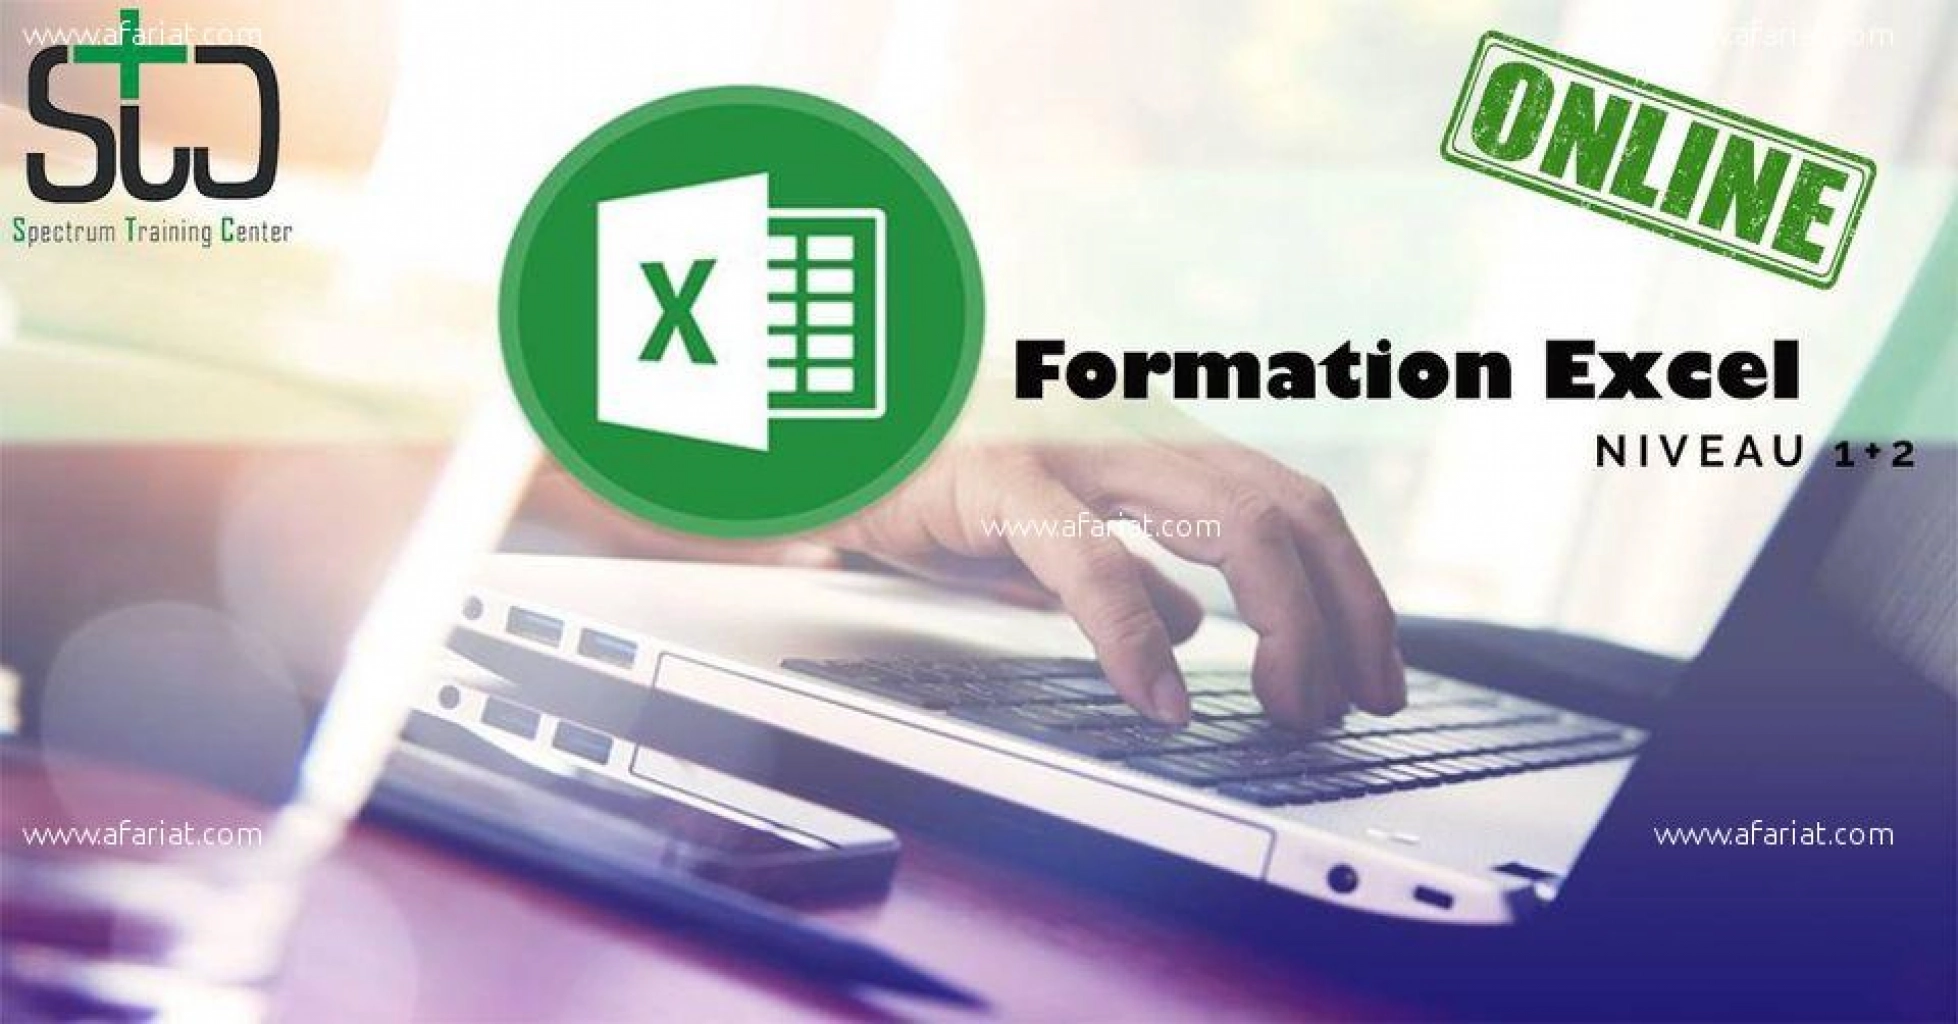 Formation Excel Niveau 1+ 2 -En Ligne